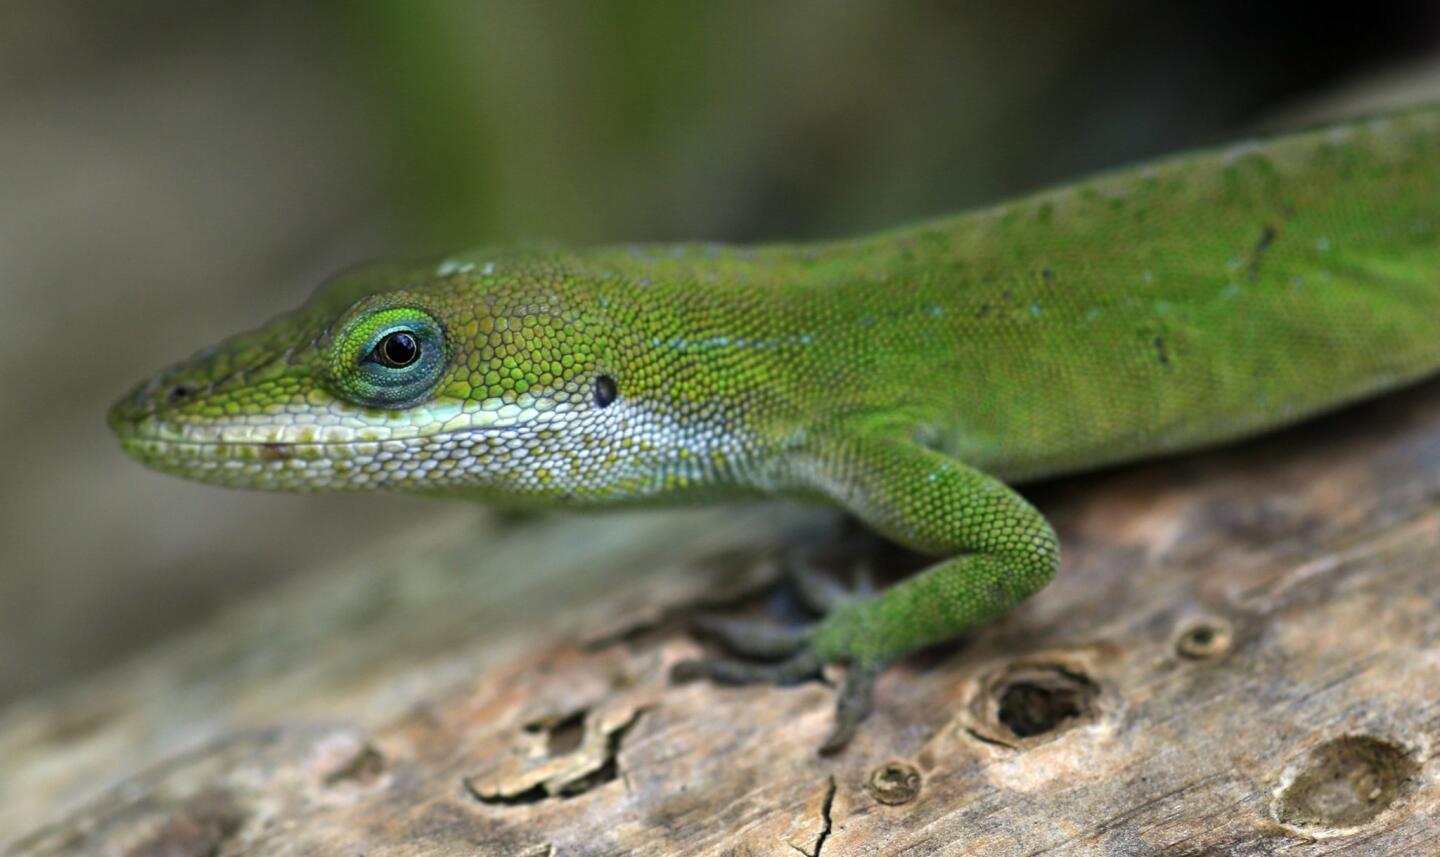 The green Anole lizard